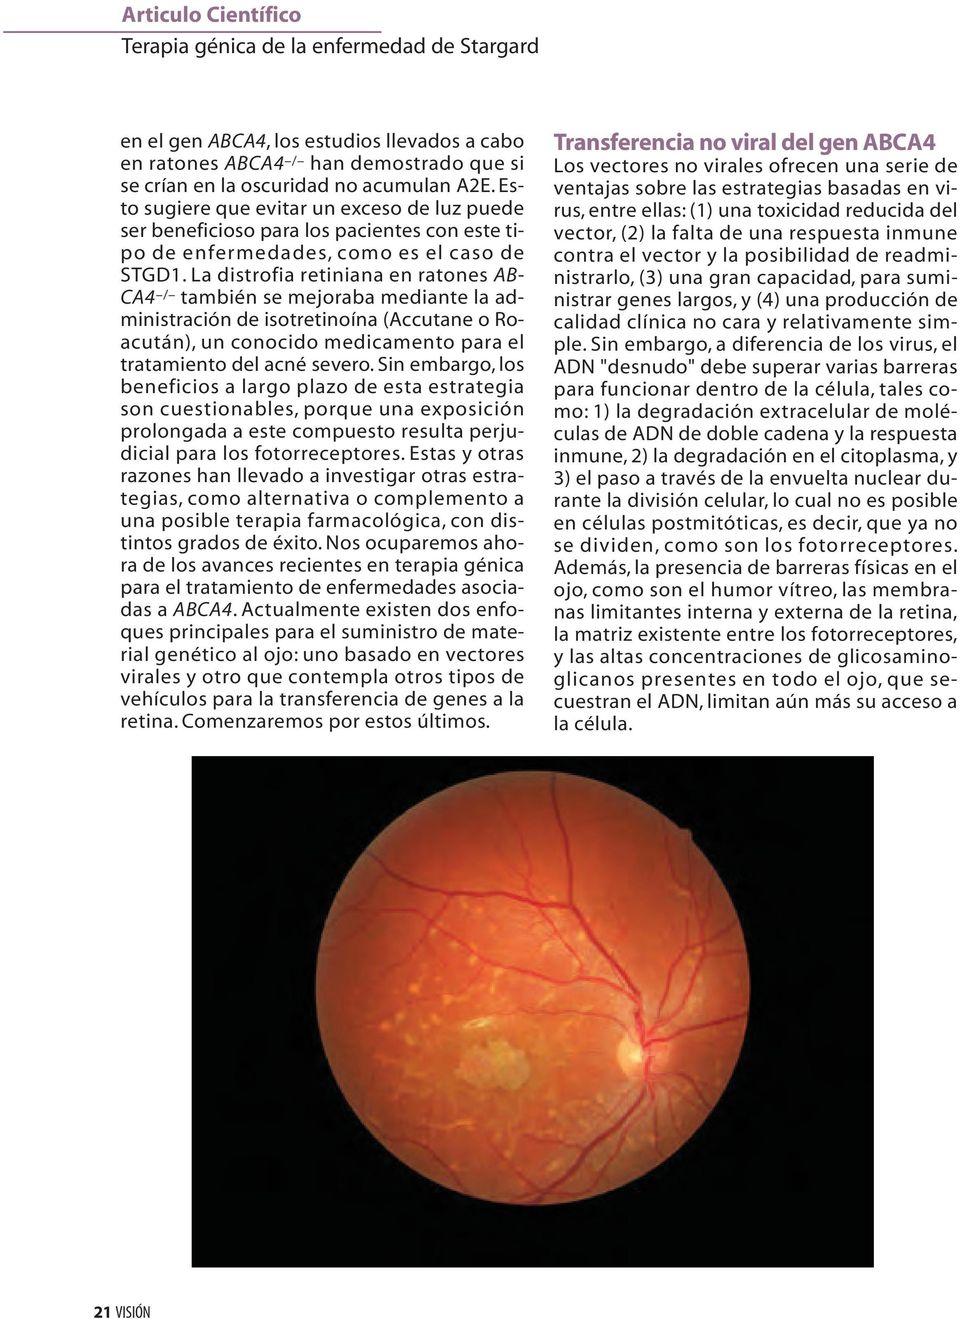 La distrofia retiniana en ratones AB- CA4 / también se mejoraba mediante la administración de isotretinoína (Accutane o Roacután), un conocido medicamento para el tratamiento del acné severo.